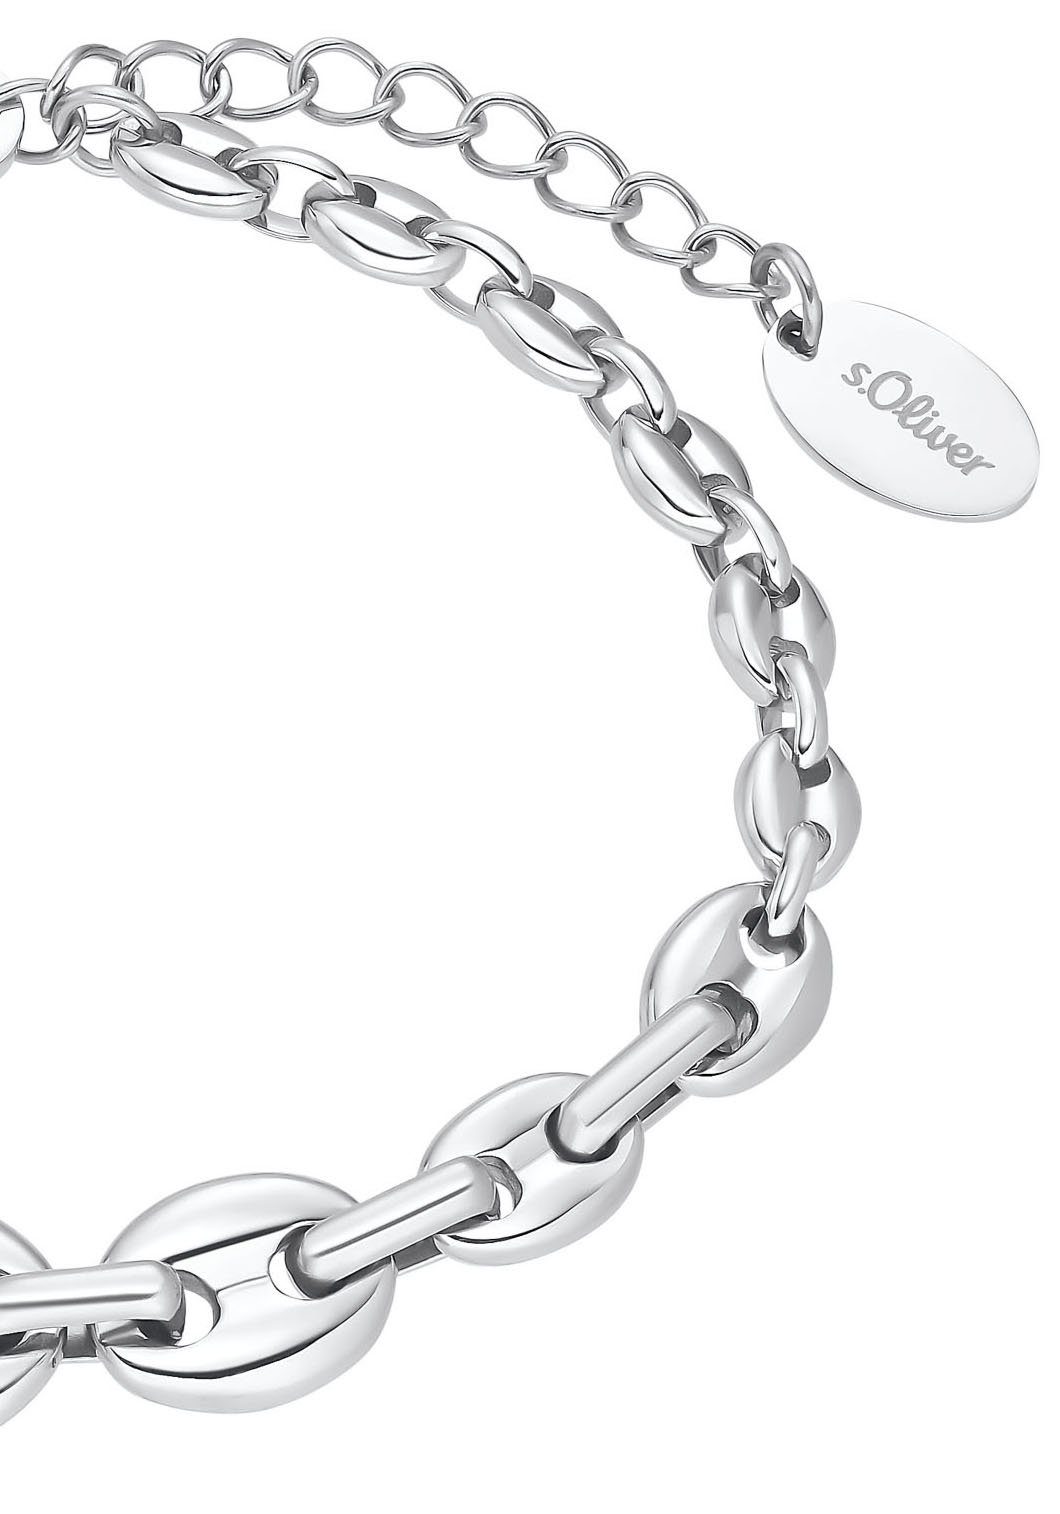 Die gefertigt wurde s.Oliver Armband Damenarmkette aus Edelstahl 2034942, robustem